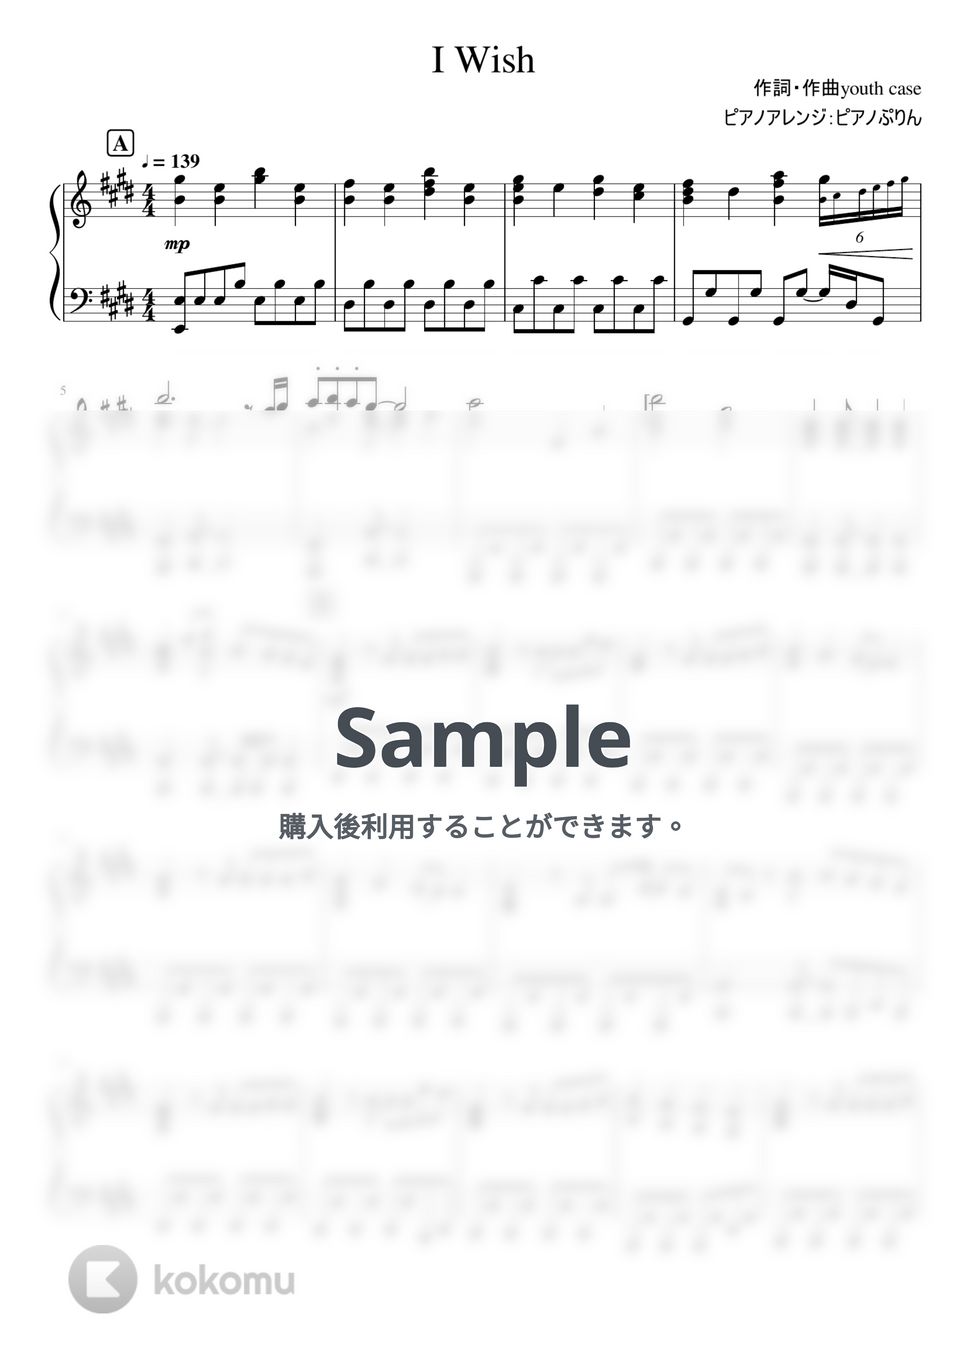 なにわ男子 - I Wish (6th Single「I Wish」/ピアノソロFull/「マイ・セカンド・アオハル」主題歌) by ピアノぷりん